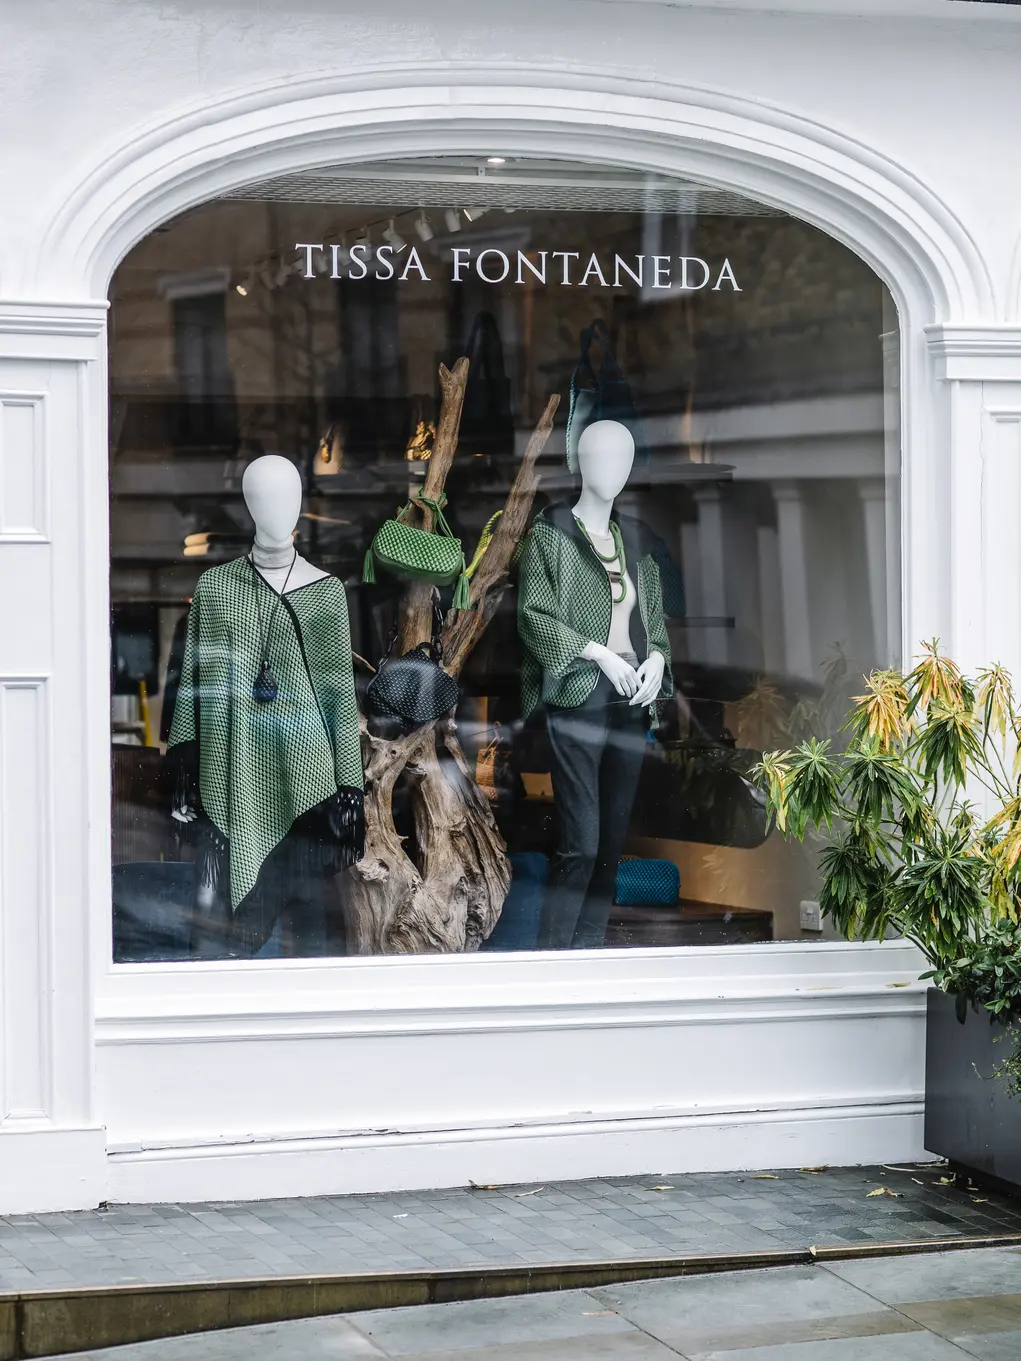 The shopfront of Tissa Fontaneda